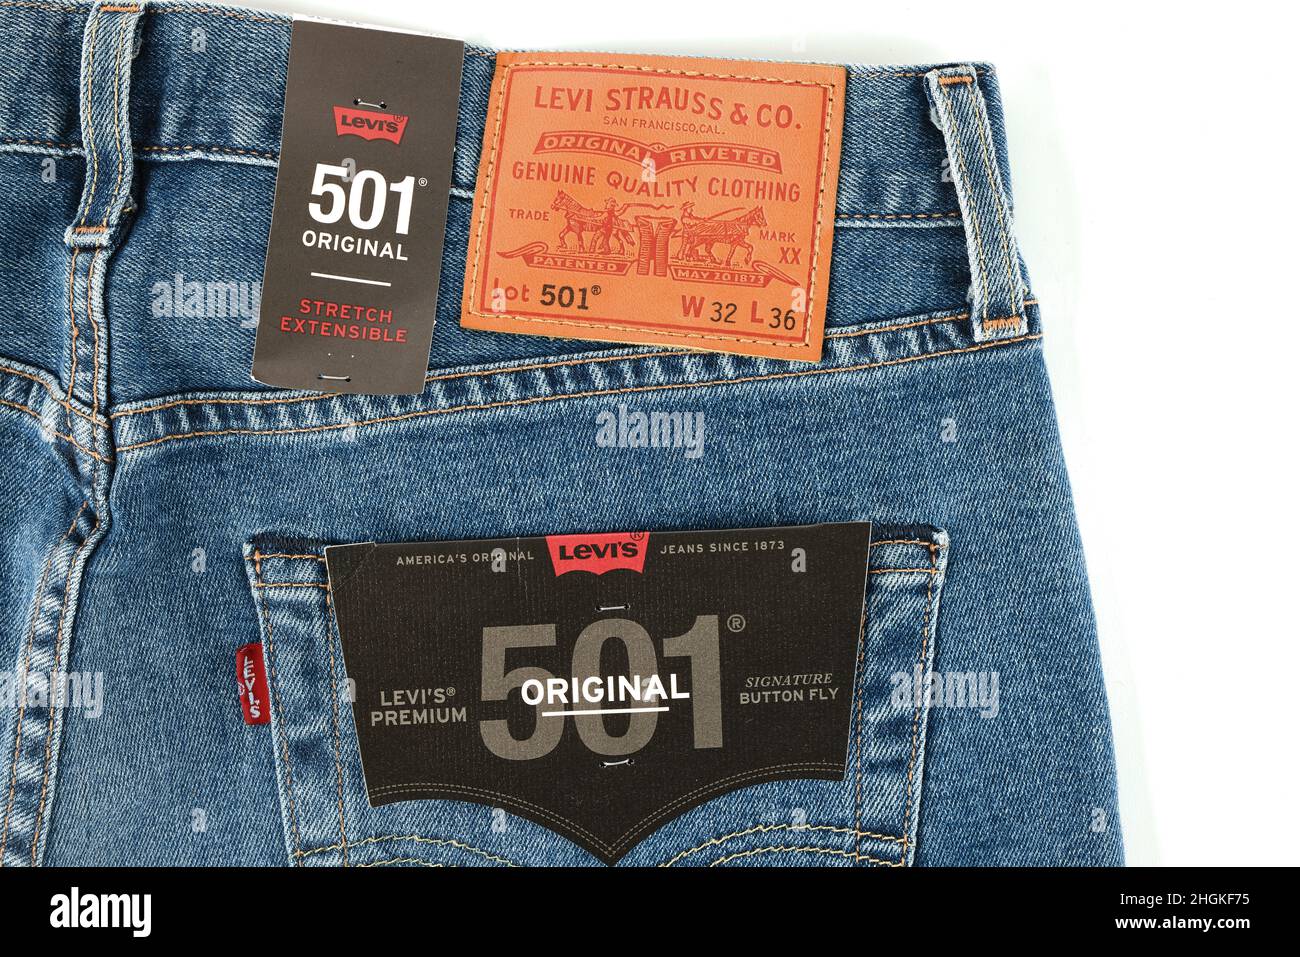 Levis 501 jeans -Fotos und -Bildmaterial in hoher Auflösung – Alamy